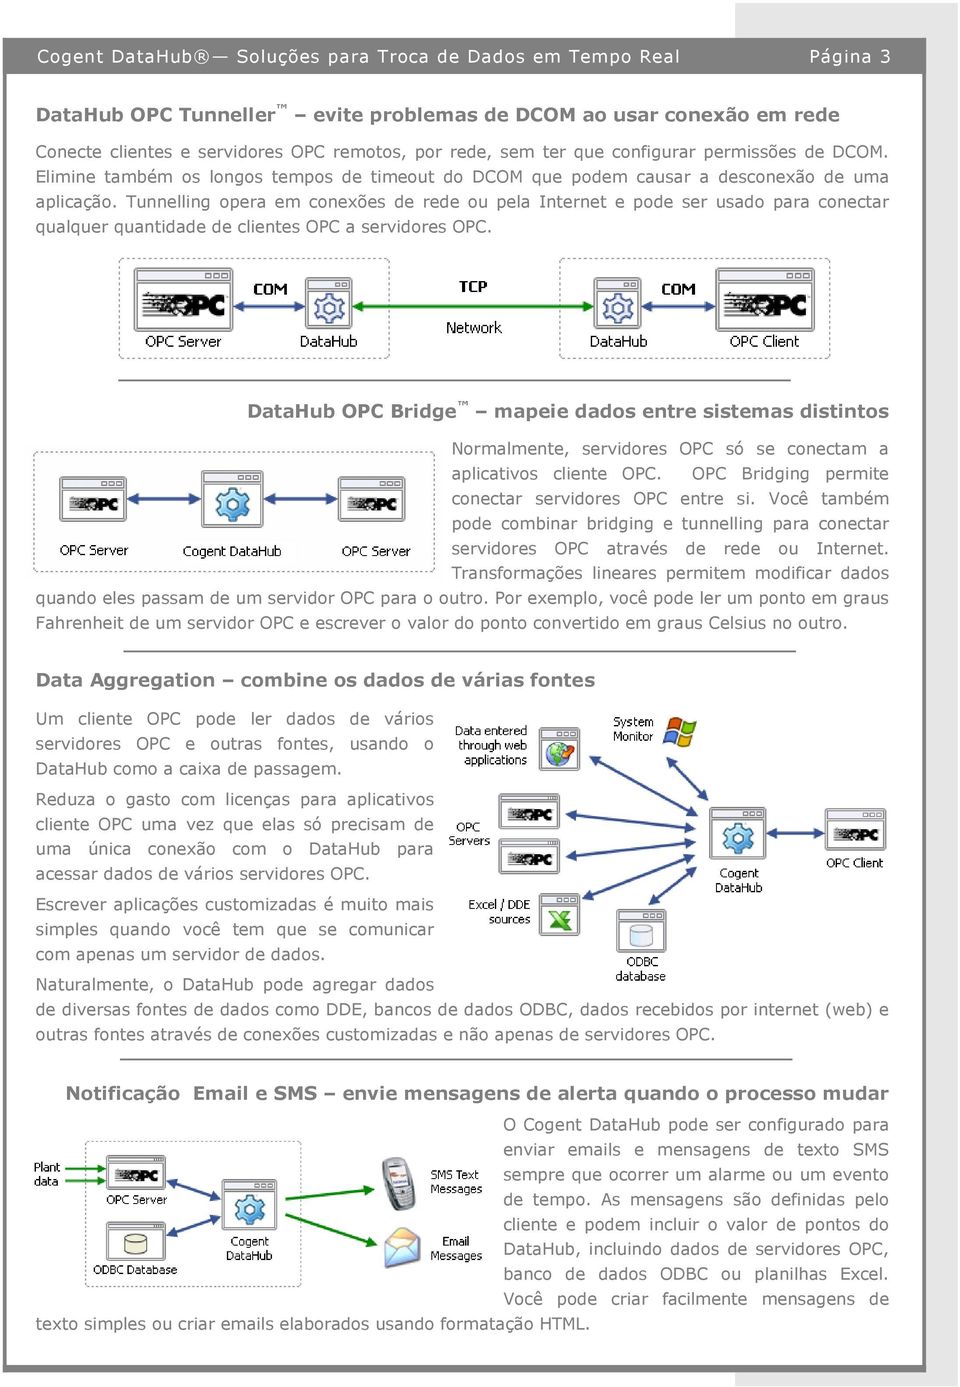 Tunnelling opera em conexões de rede ou pela Internet e pode ser usado para conectar qualquer quantidade de clientes OPC a servidores OPC.